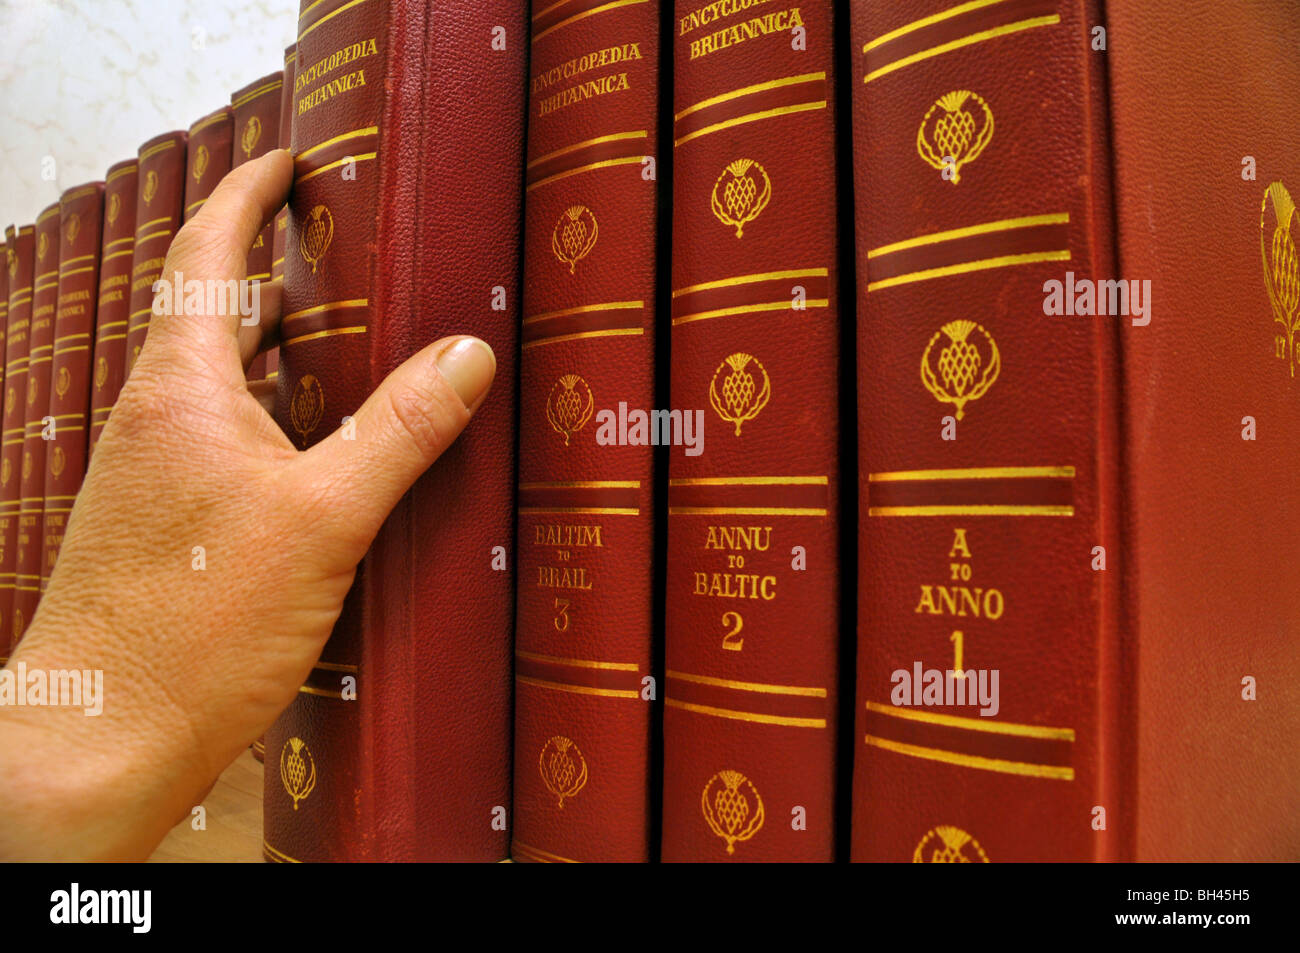 Close up of a person's hand vous sélectionnez un volume à partir d'une série de livres l'encyclopédie Britannica. Banque D'Images